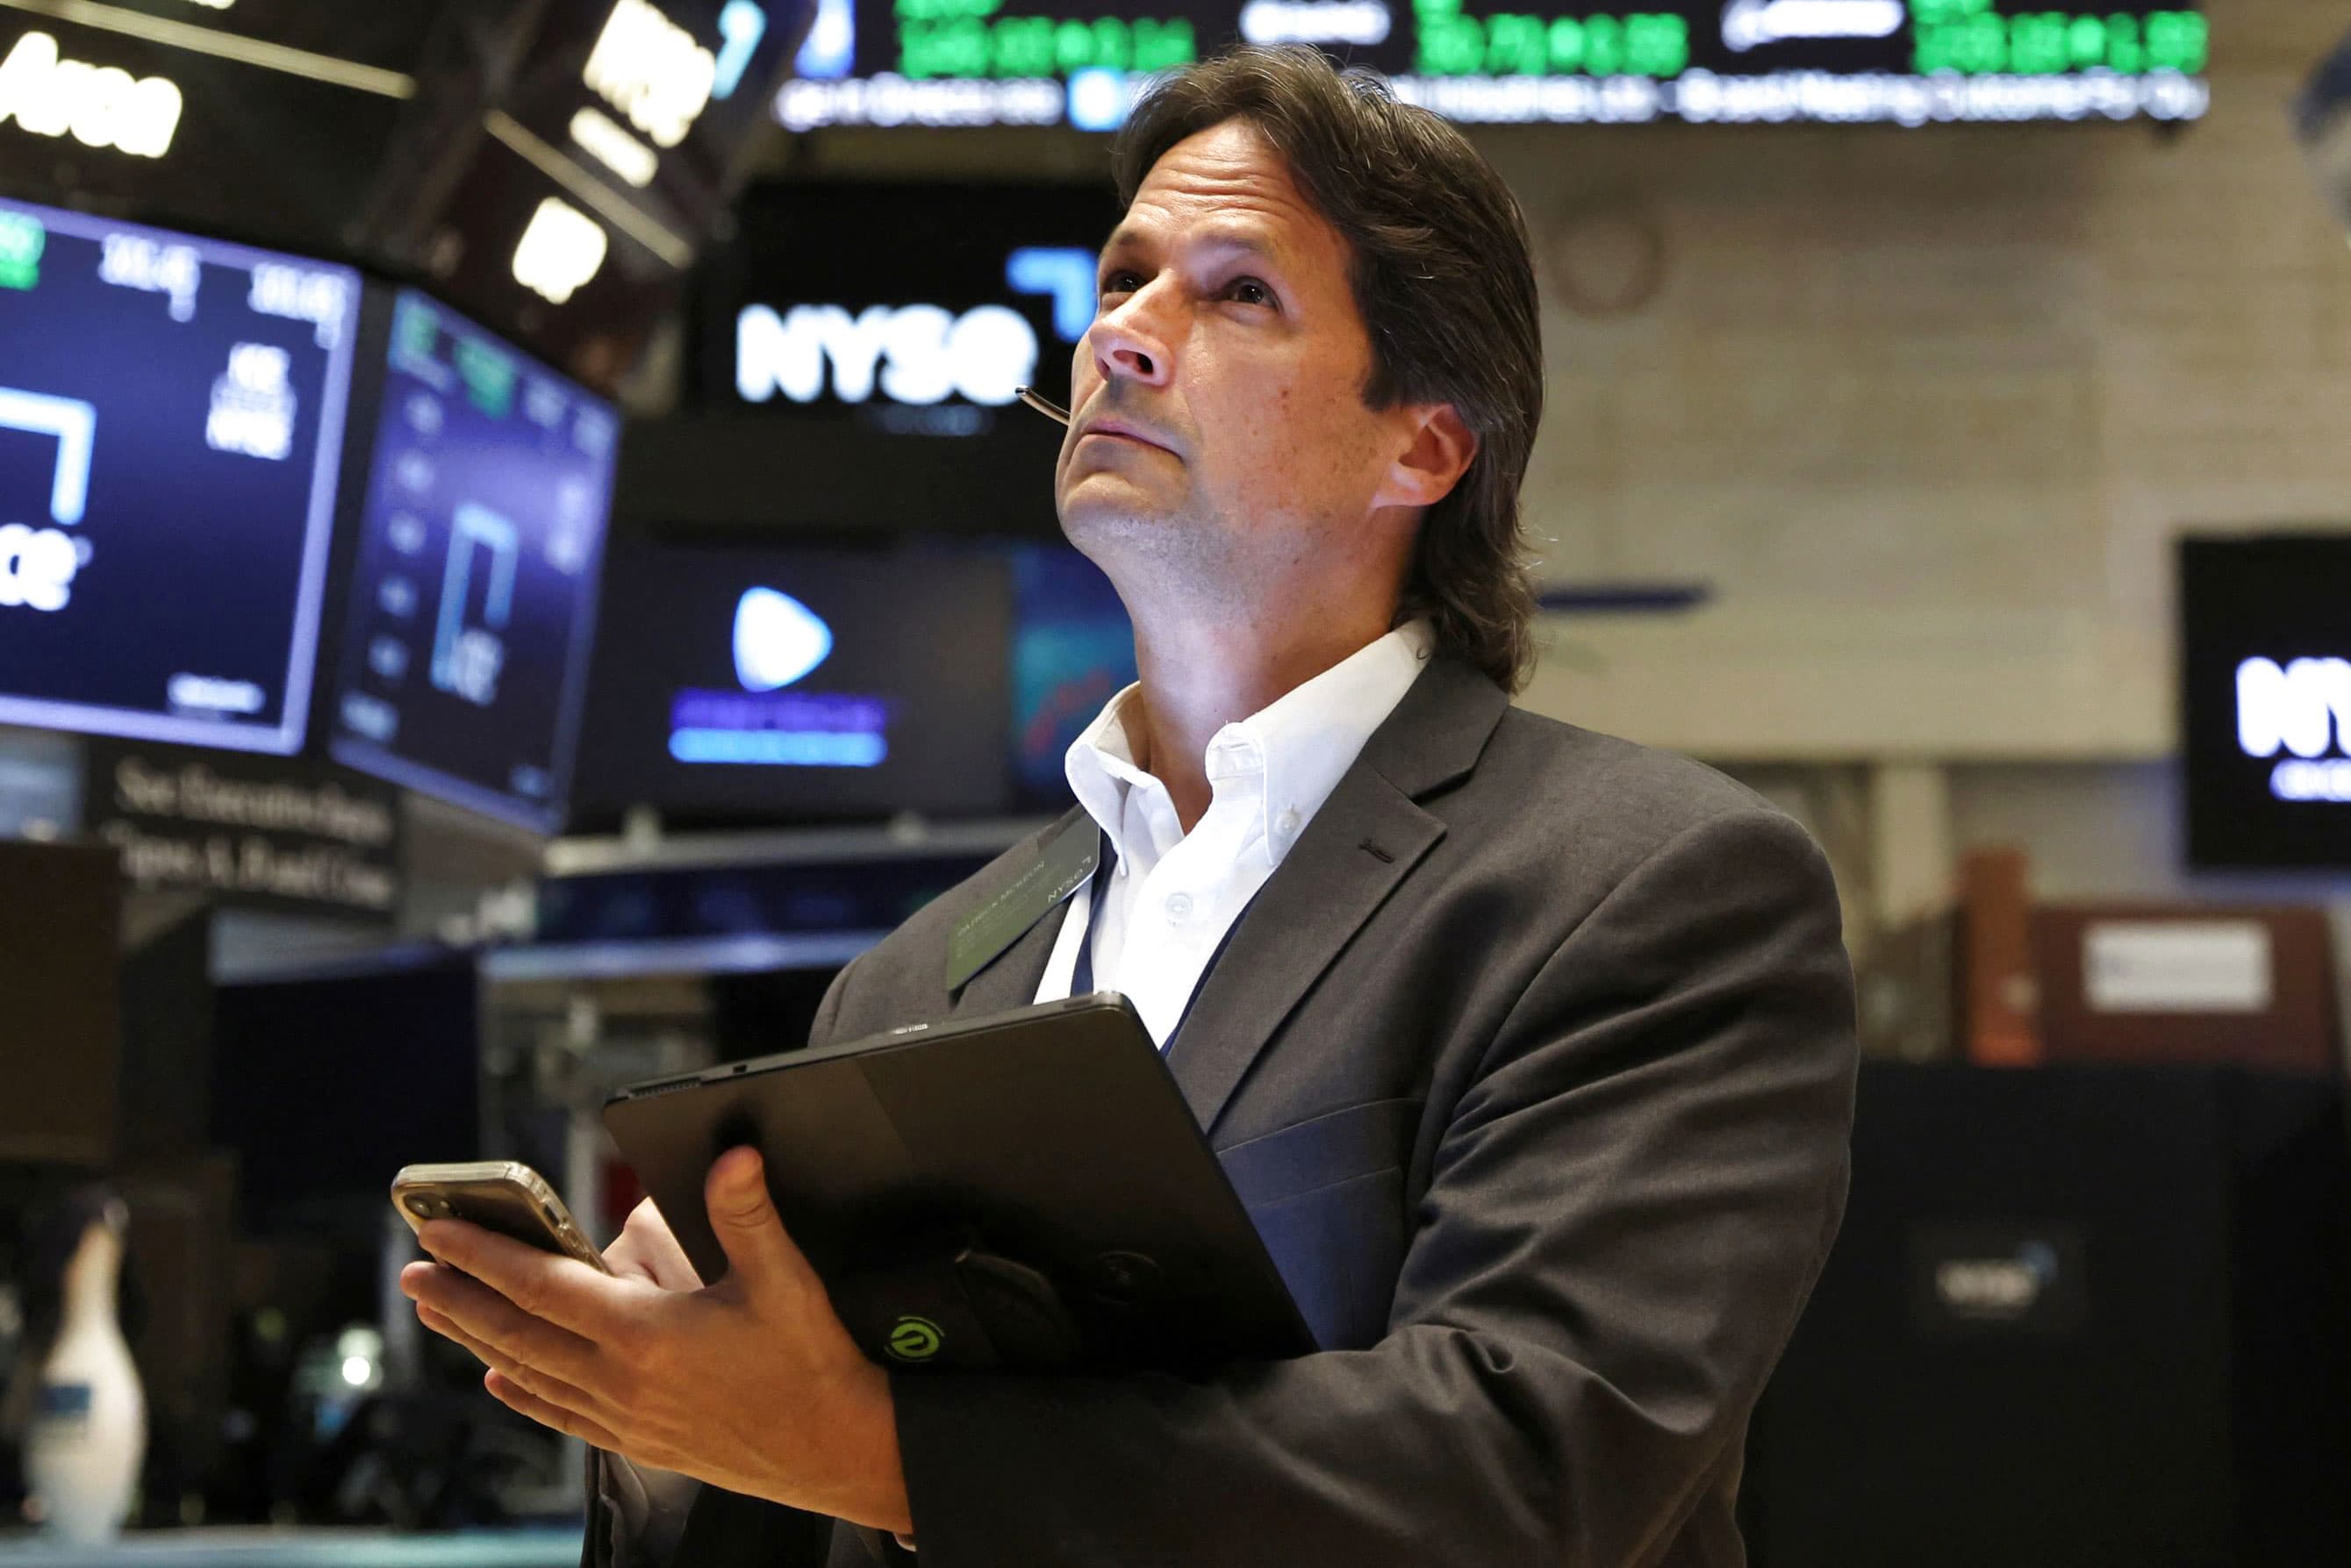 Los futuros de acciones caen mientras Wall Street prevé una semana de resultados ocupada: actualizaciones en vivo